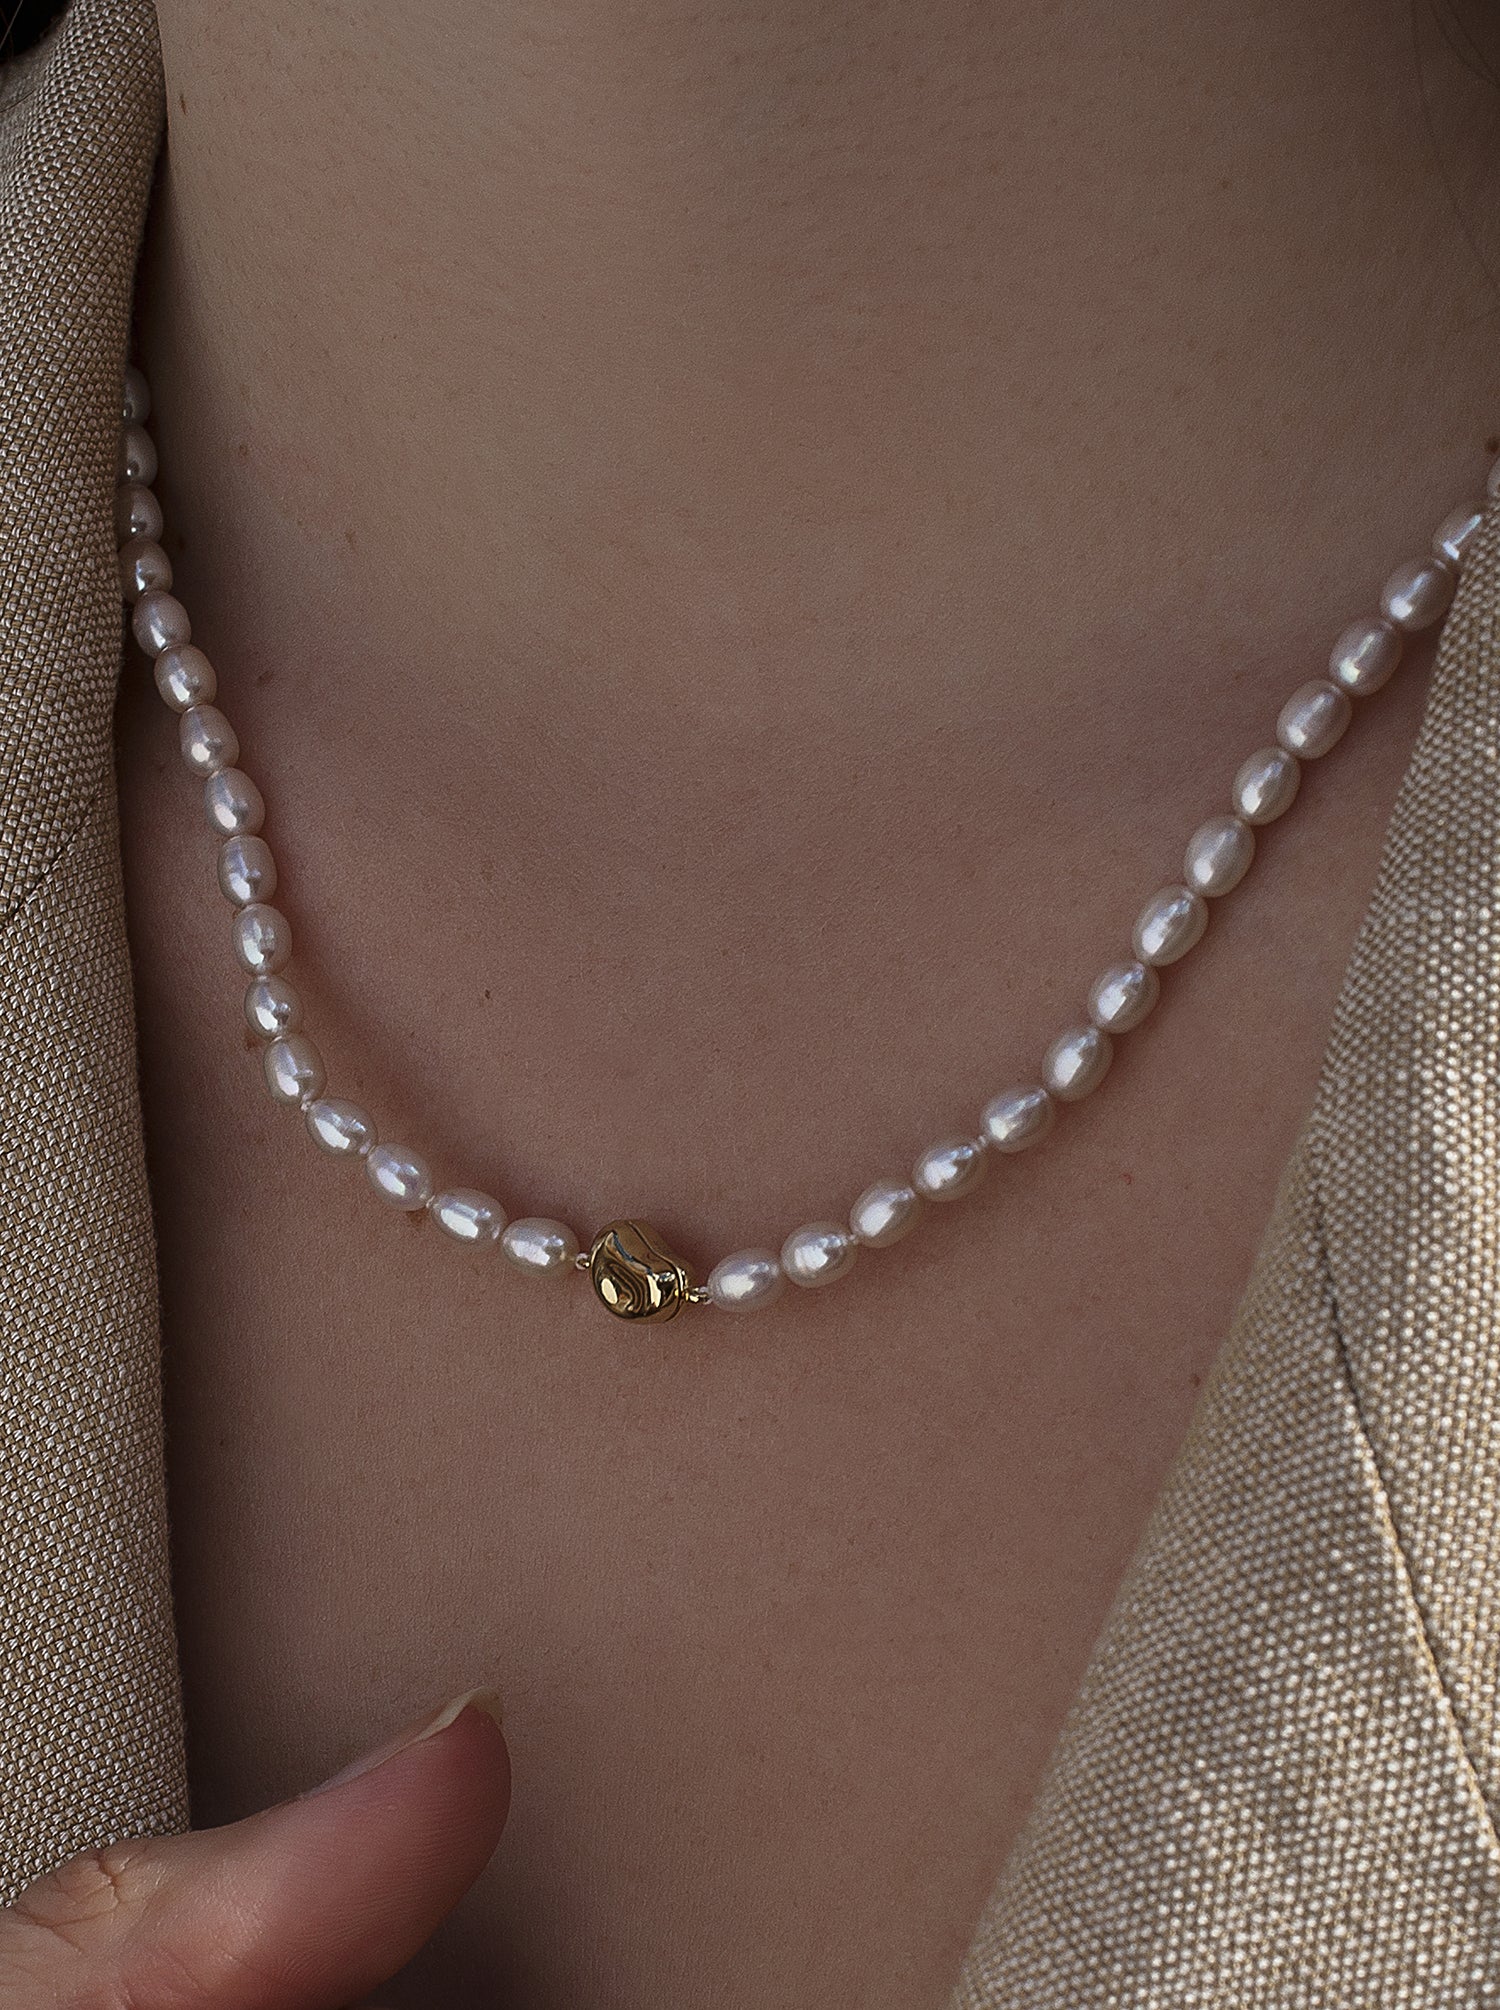 Collares cortos de perlas con detalle cierre de plata bañada en oro